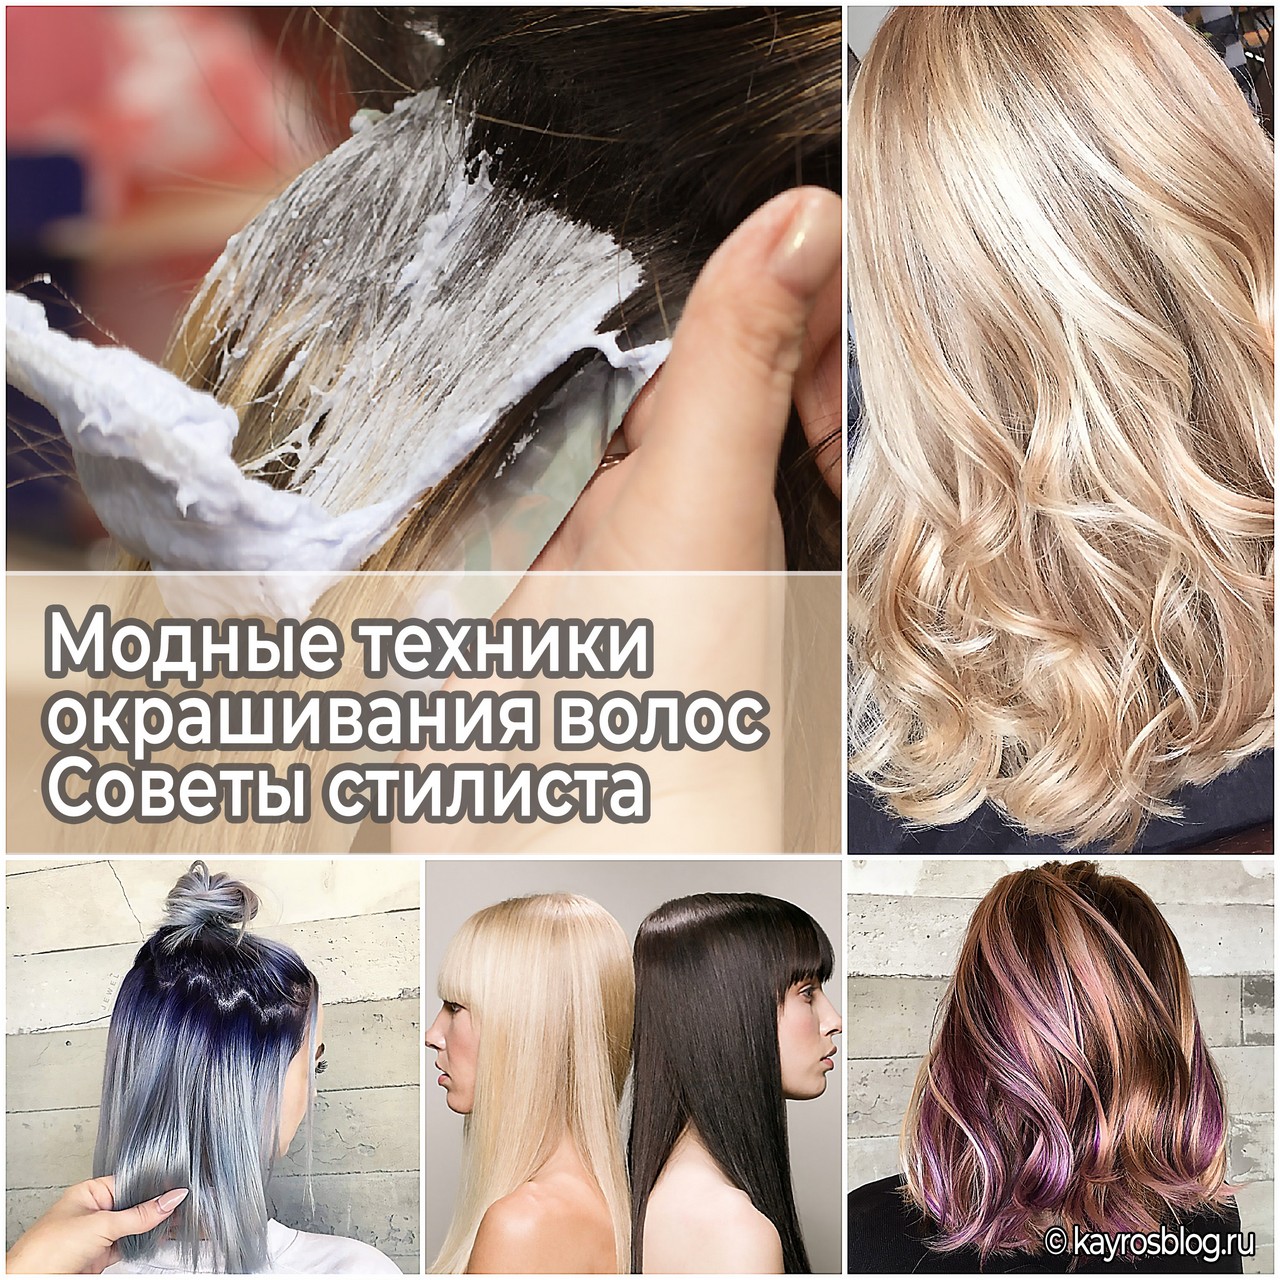 Модные техники окрашивания волос - Советы стилиста